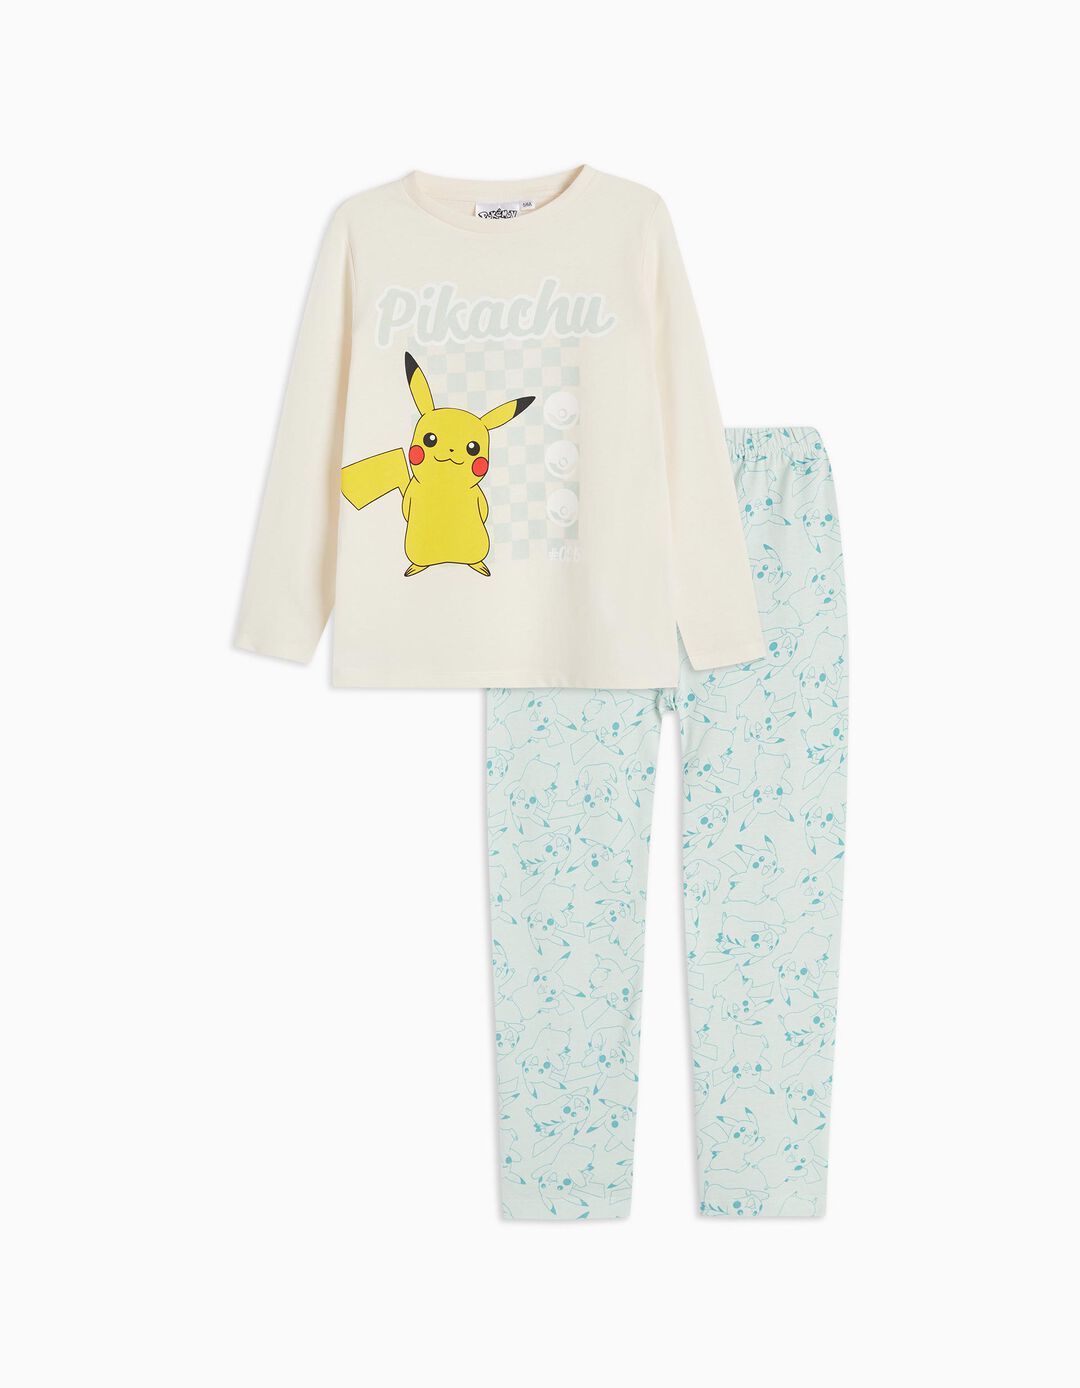 Pokémon' Pyjamas, Boys, Multicolour